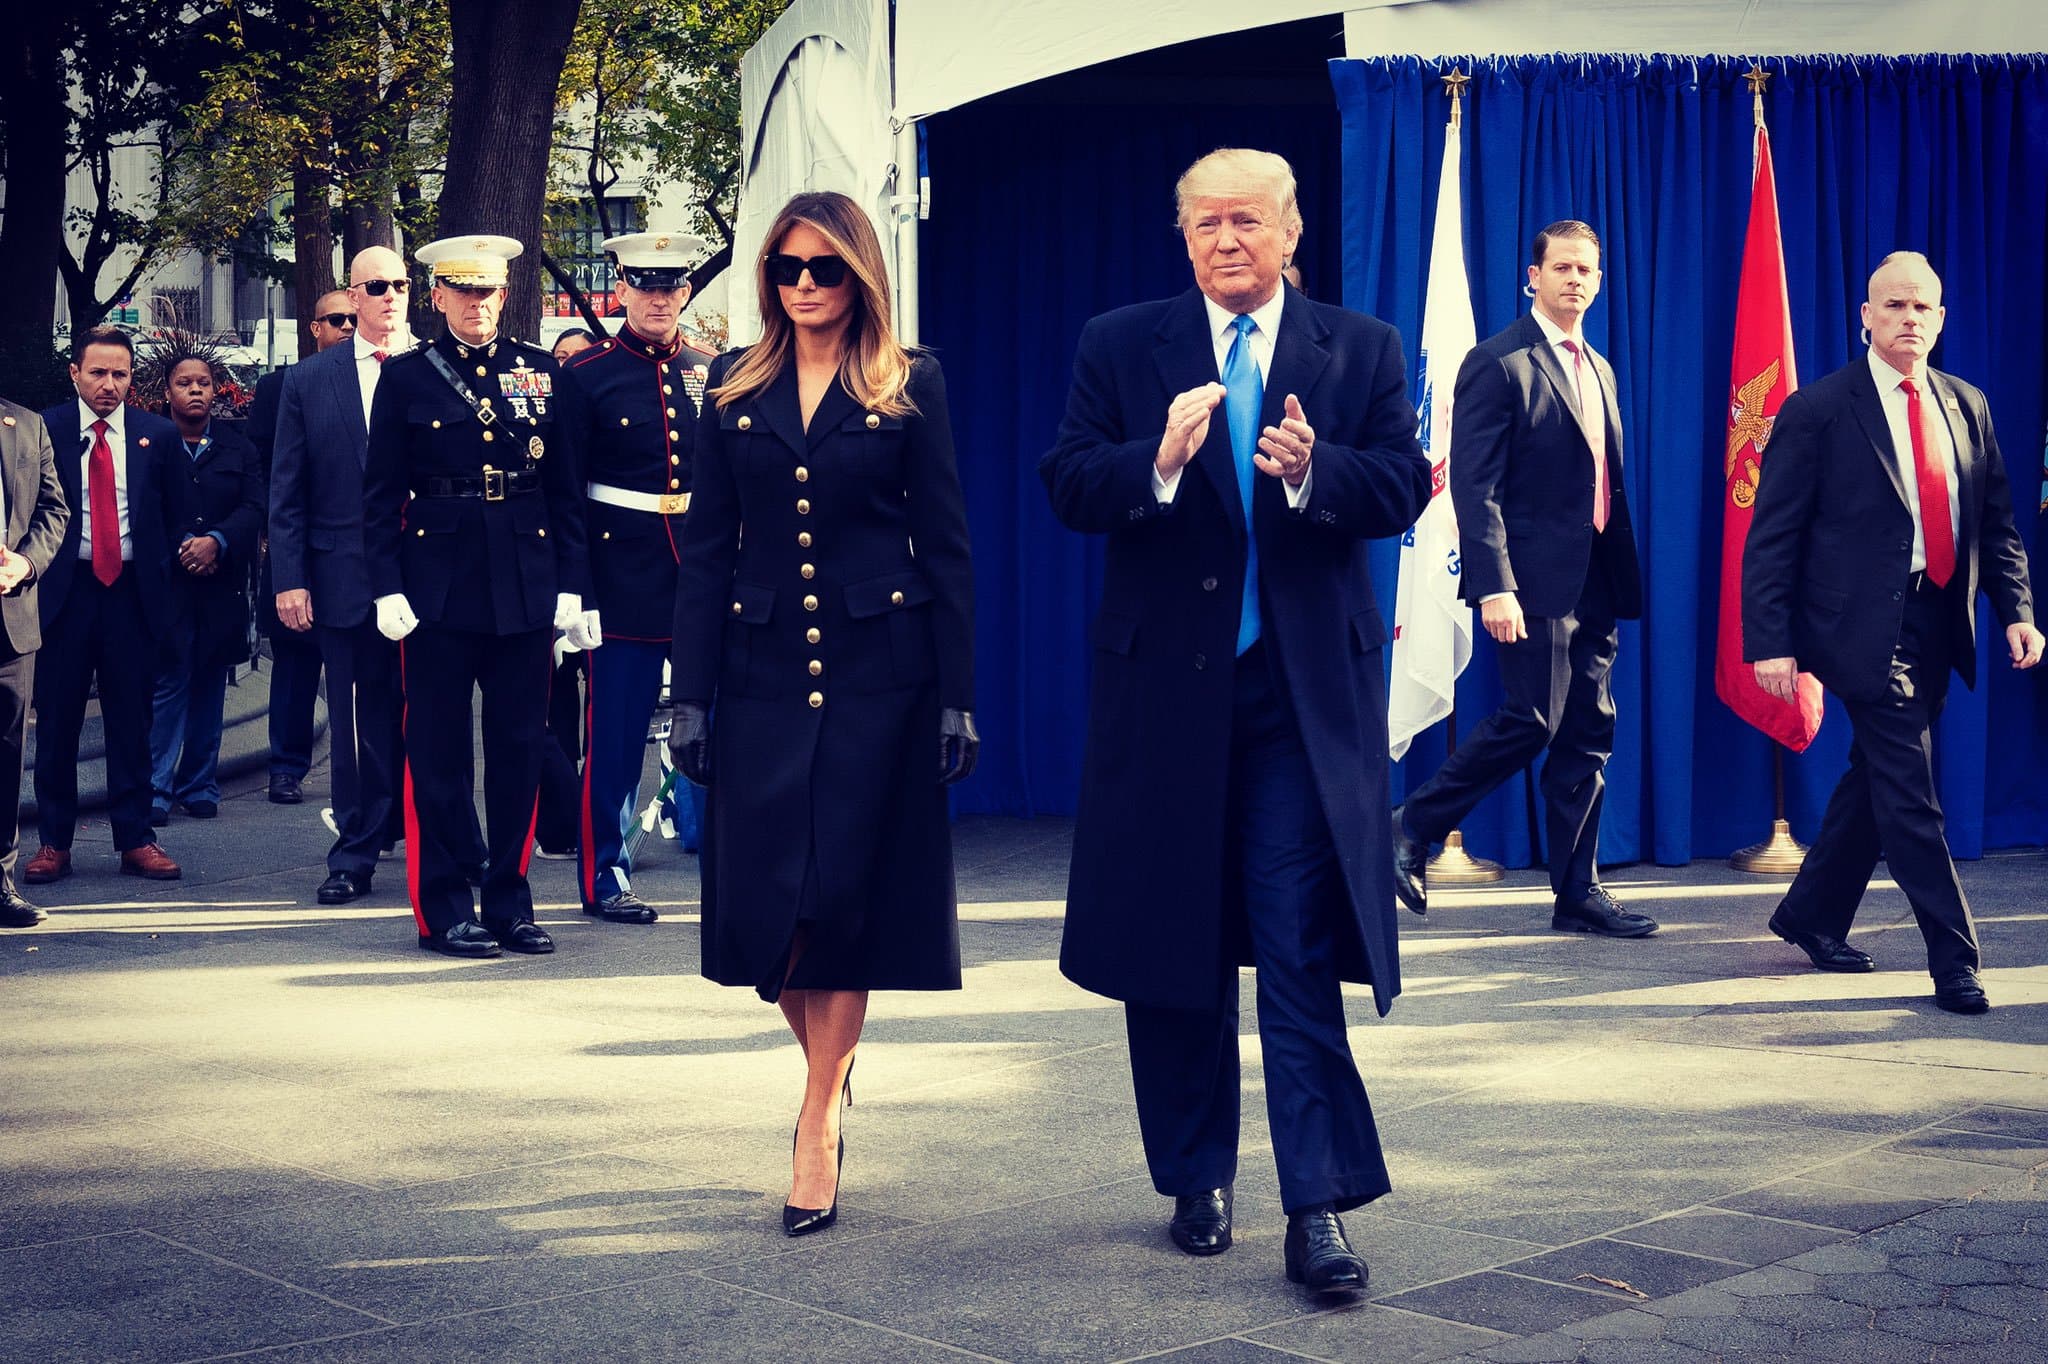 El presidente Donald Trump y su esposa Melania en la ceremonia en honor del Día del Veterano • Foto: @FLOTUS